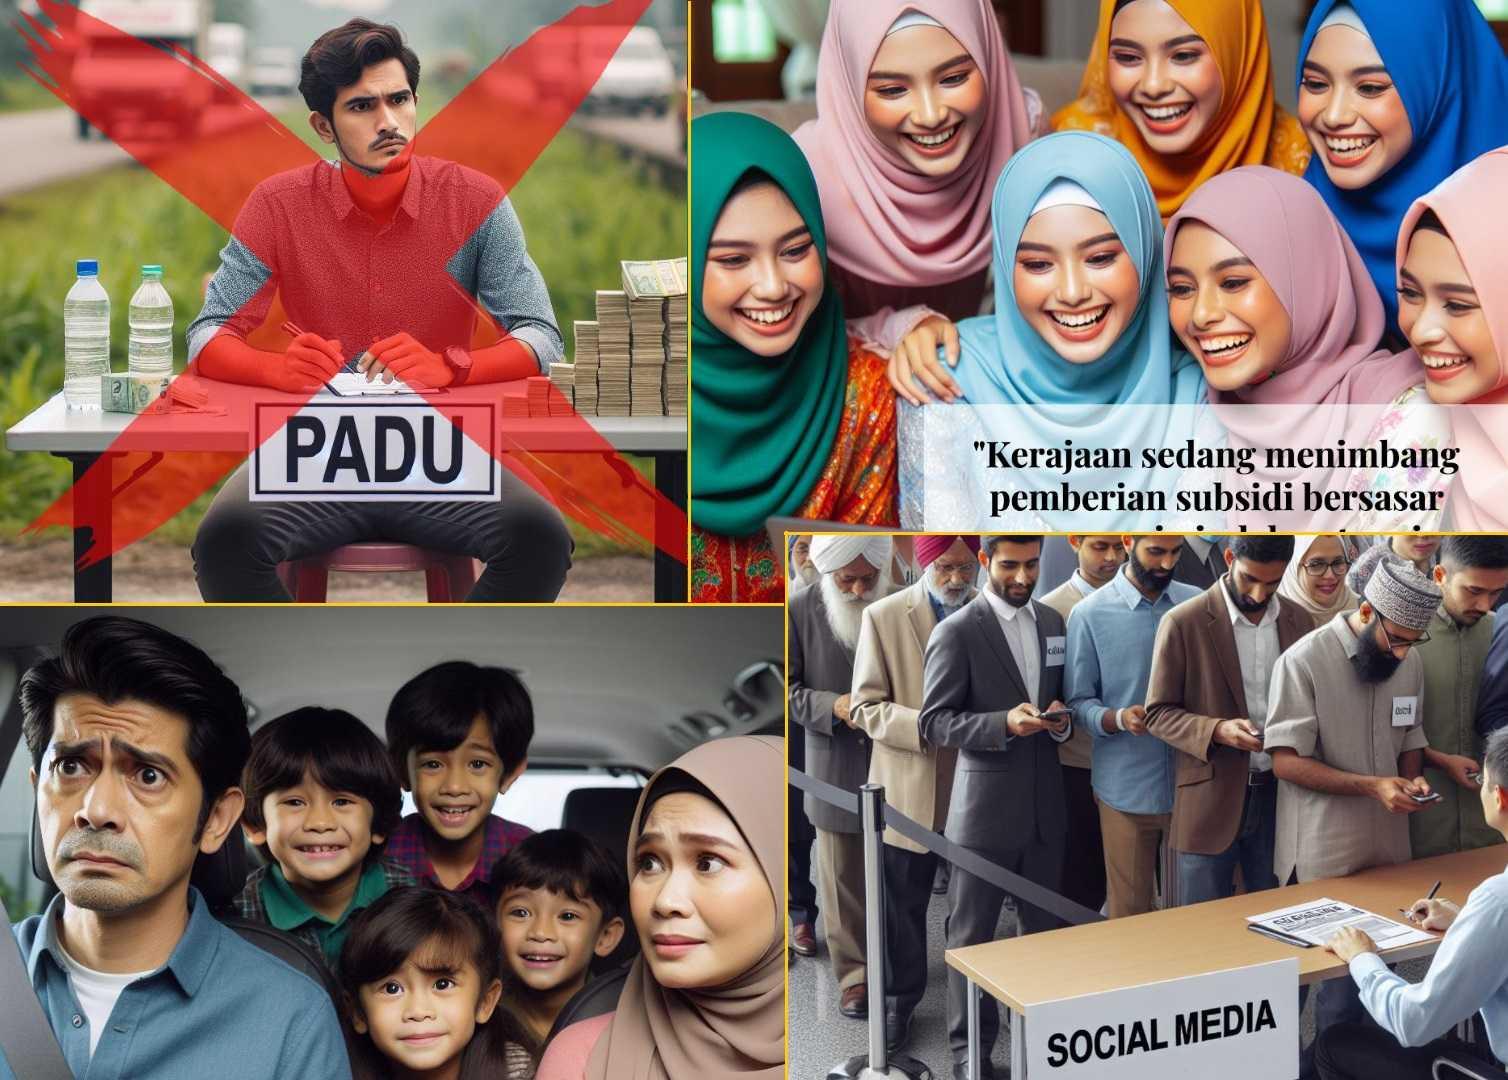 Kementerian Ekonomi diketuai Rafizi Ramli menggunakan pelbagai cara untuk menggalakkan orang ramai mendaftar di PADU, seperti gambar-gambar yang dimuat naik di media sosial kementerian itu dalam usaha meredakan kebimbangan mengenai kerahsiaan data.